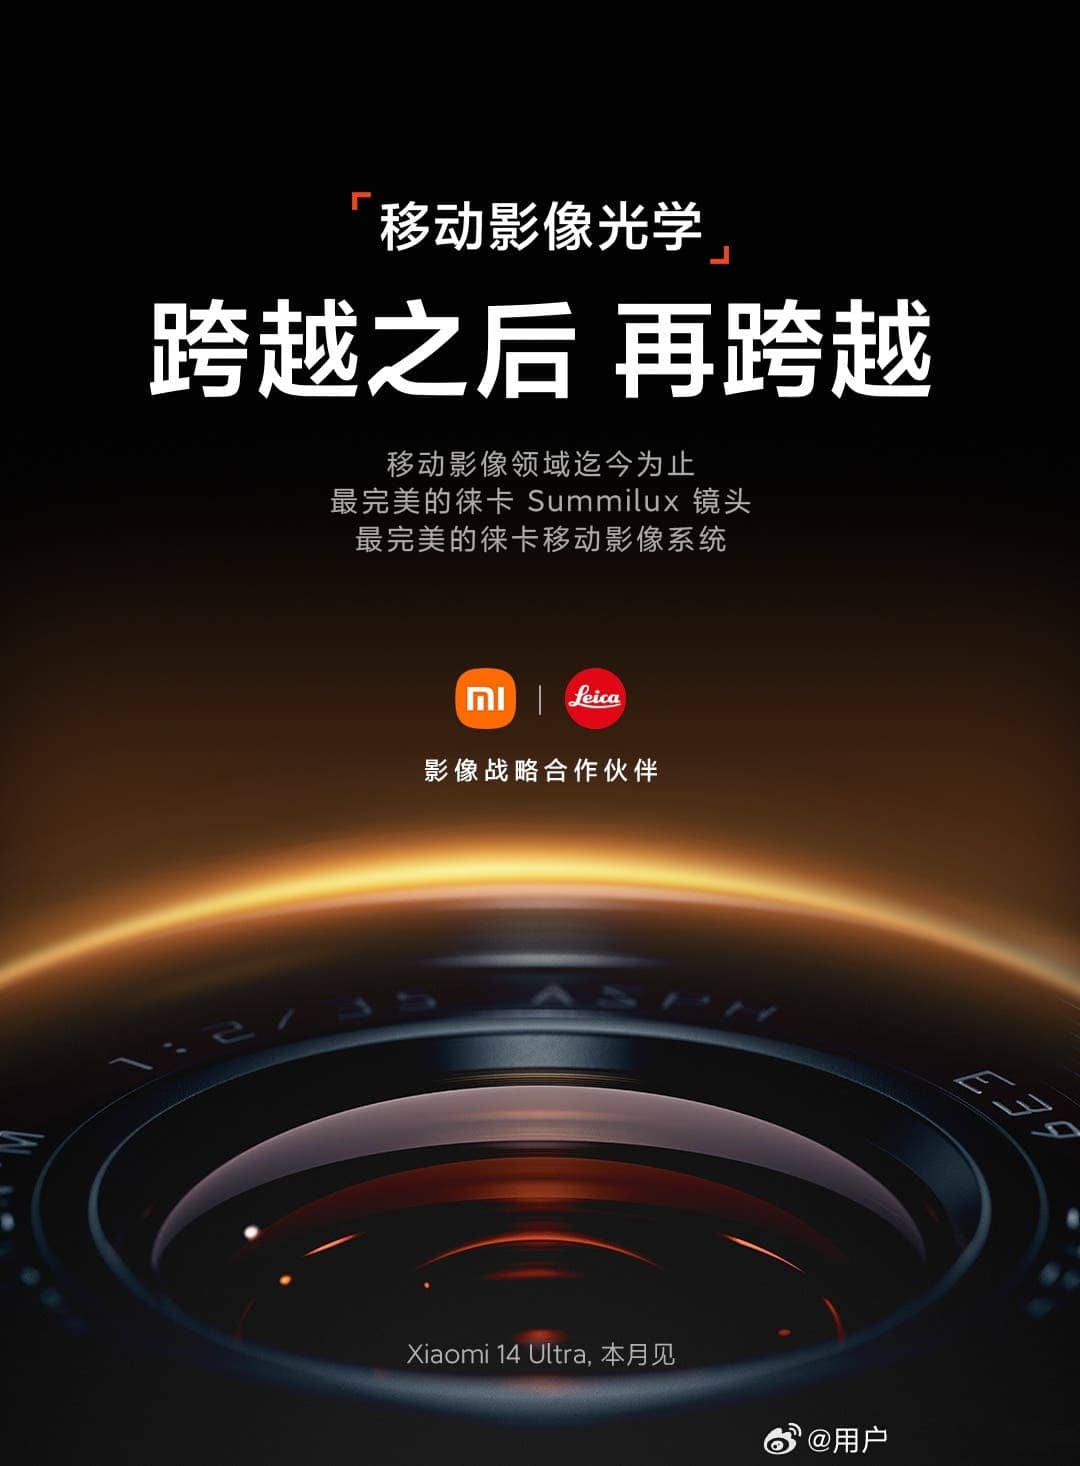 Xiaomi 14 Ultra China Launch